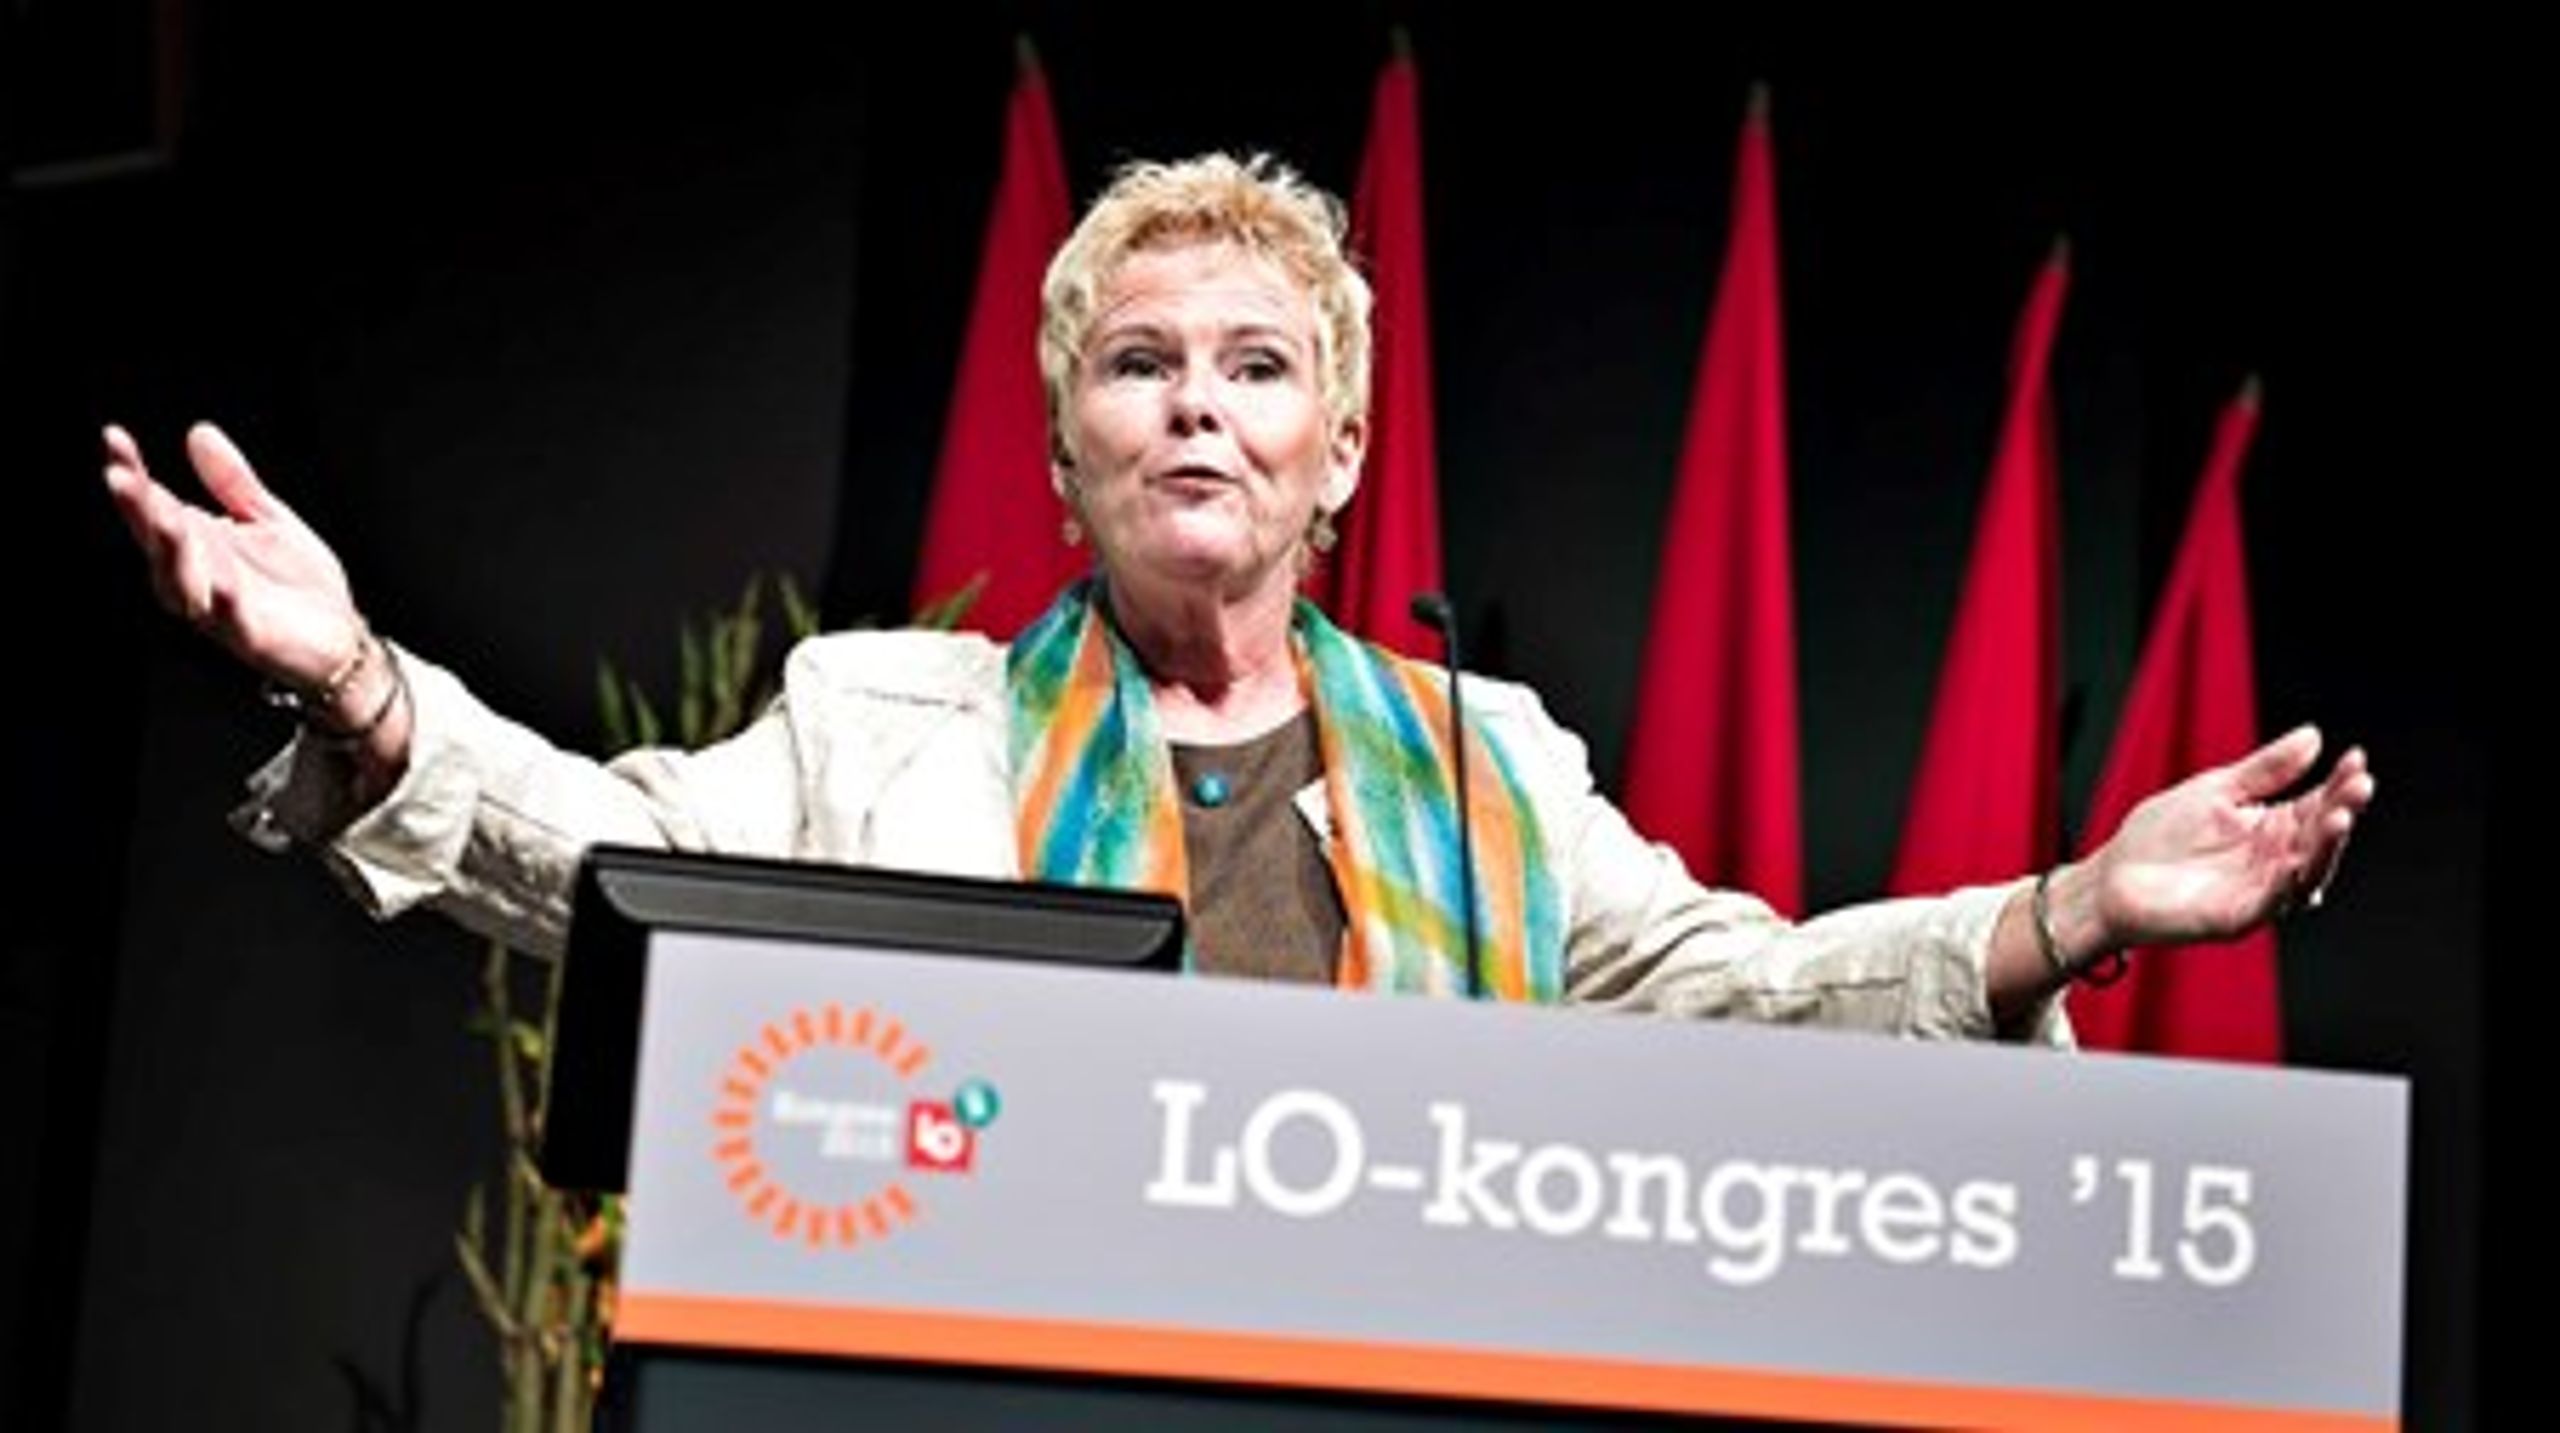 Lizette Risgaard har siden 2007 været næstformand i LO og har fra starten haft som erklæret mål at overtage formandsposten efter Harald Børsting.